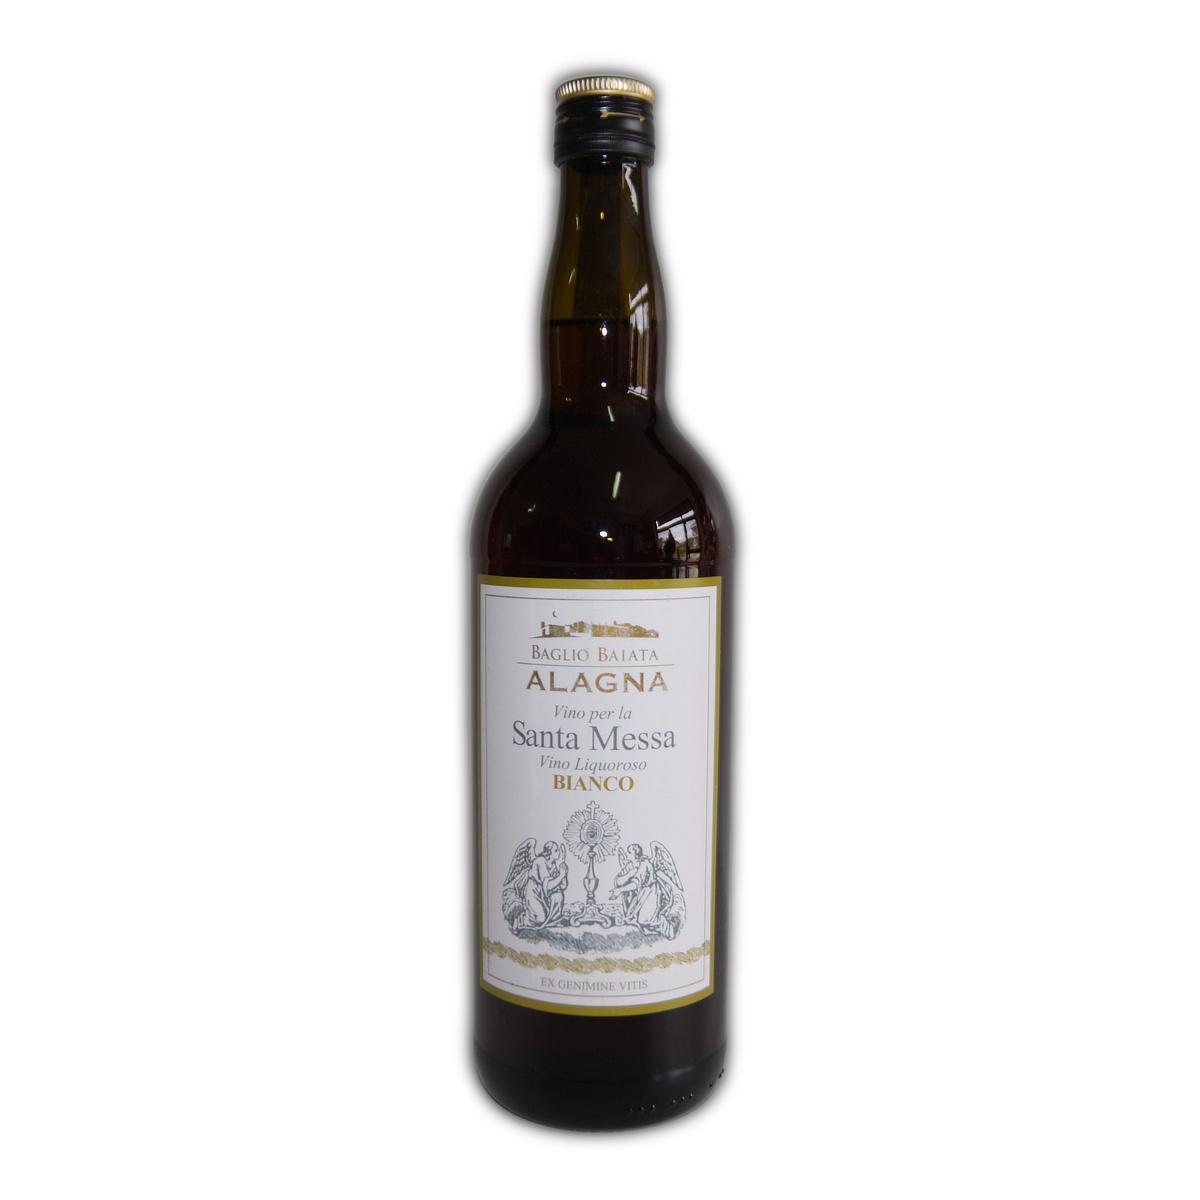 Vino bianco liquoroso per Santa Messa Alagna